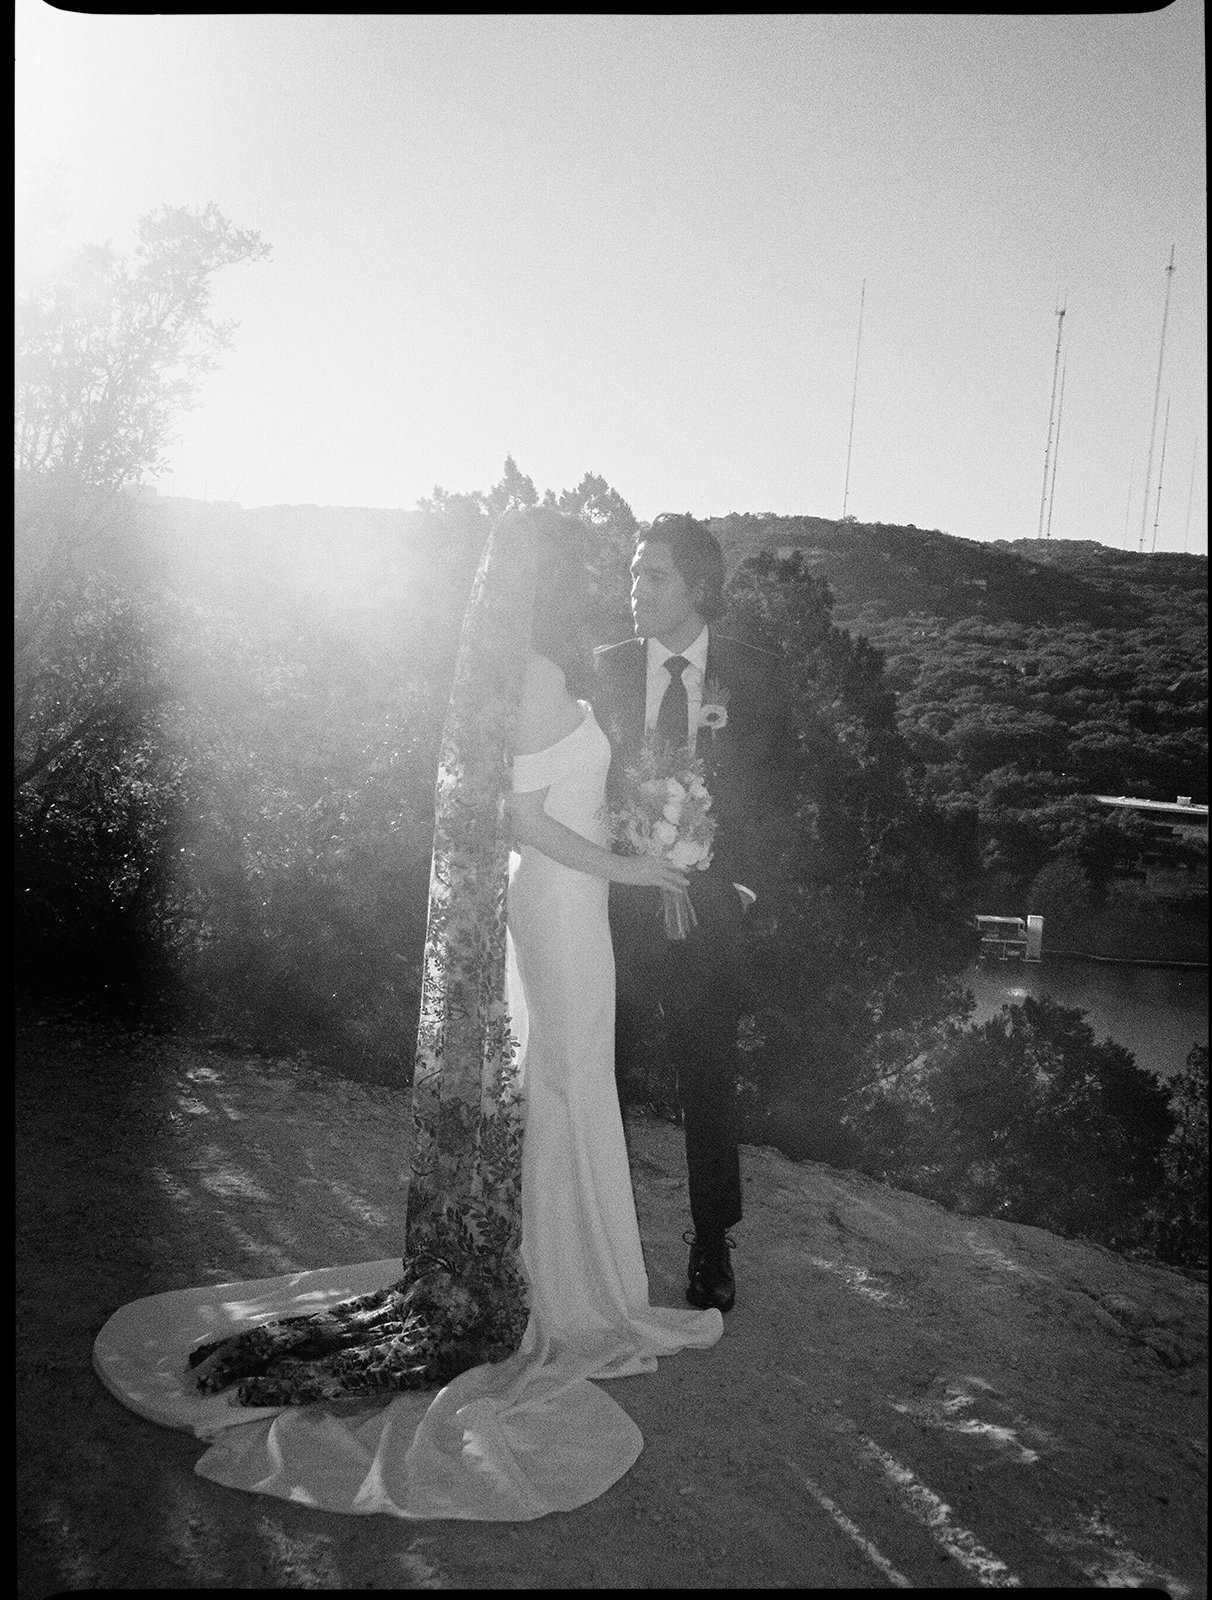 Best-Austin-Wedding-Photographers-Elopement-Film-35mm-Asheville-Santa-Barbara-Laguna-Gloria-26.jpg